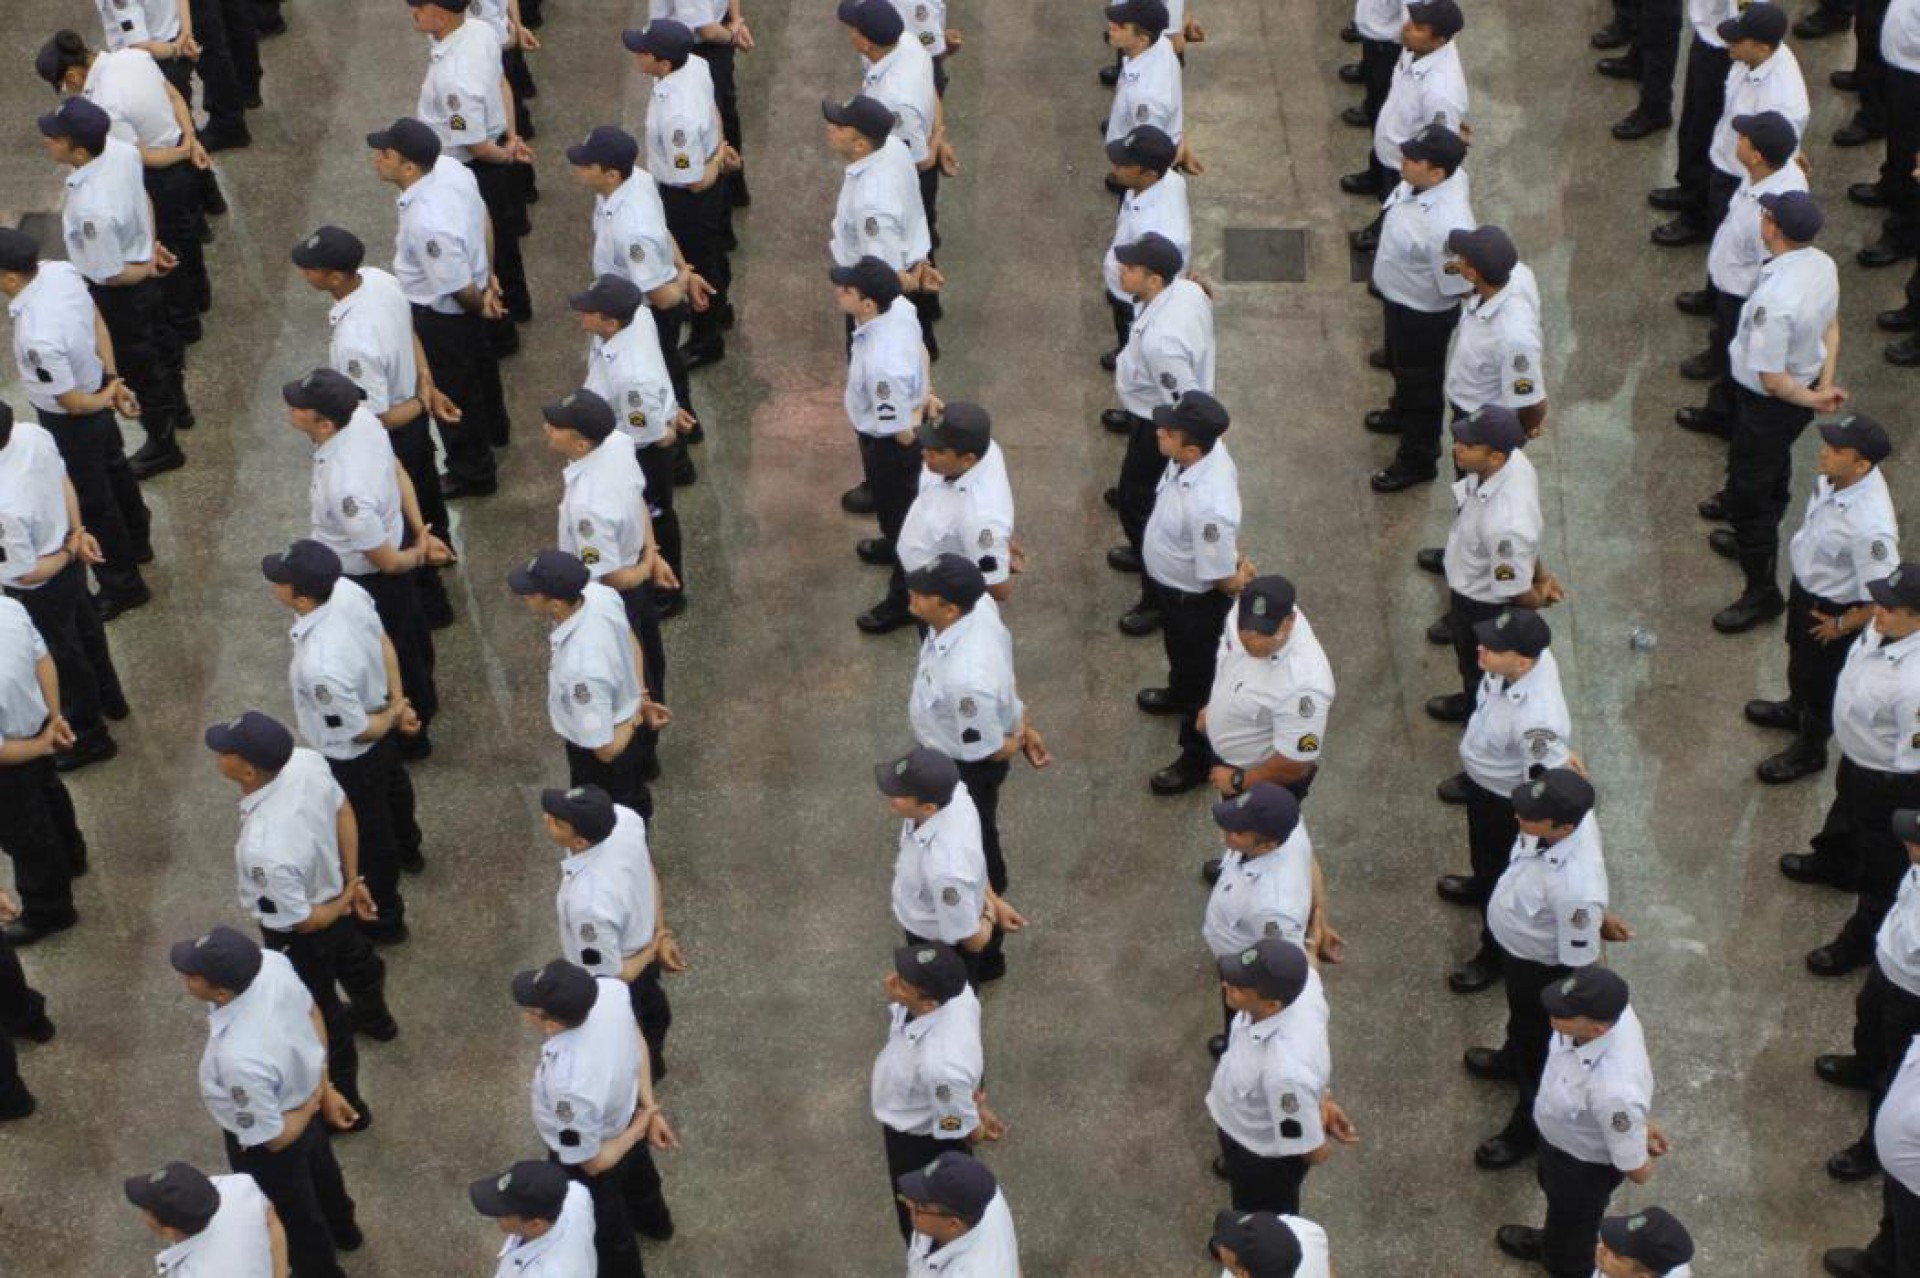 Governadores Camilo Santana têm apostado em promoções de policiais militares (Foto: MATEUS DANTAS - 27/12/2016)